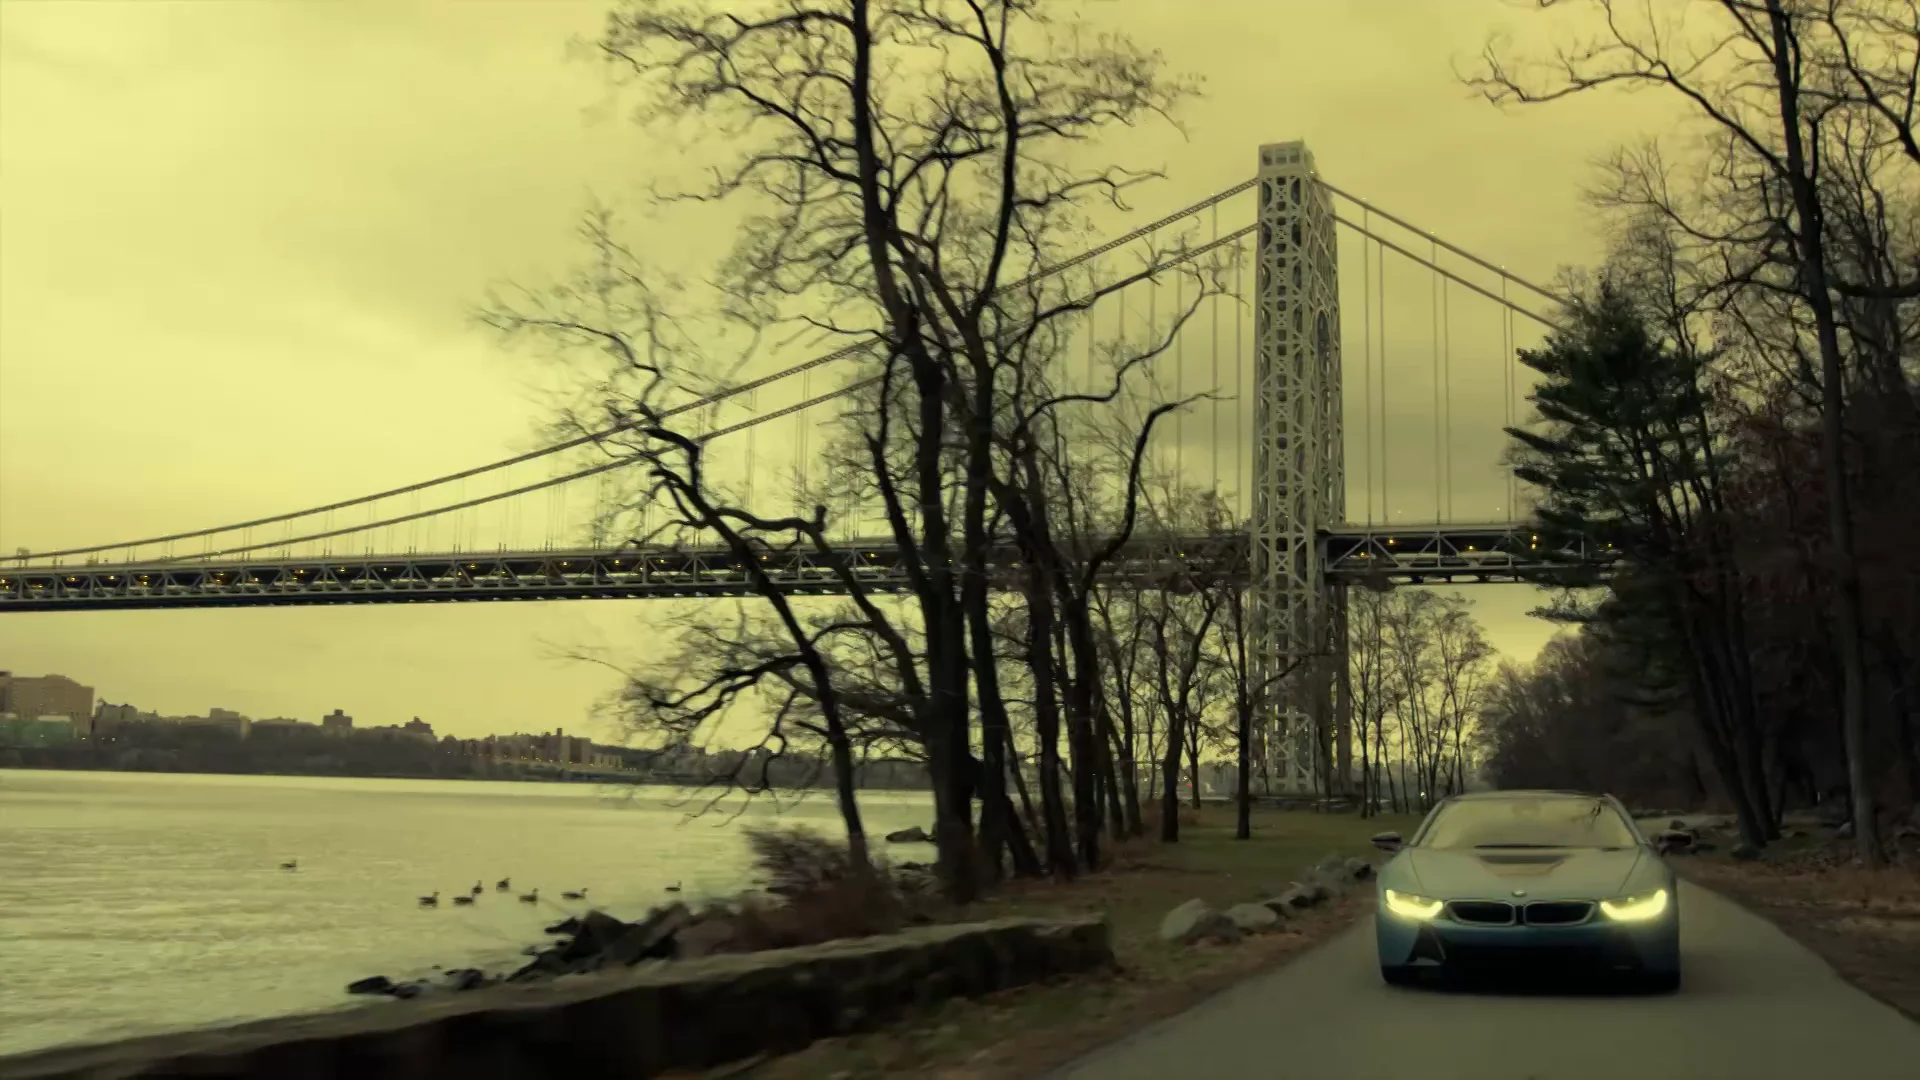 Louis Vuitton x BMW i8 on Vimeo